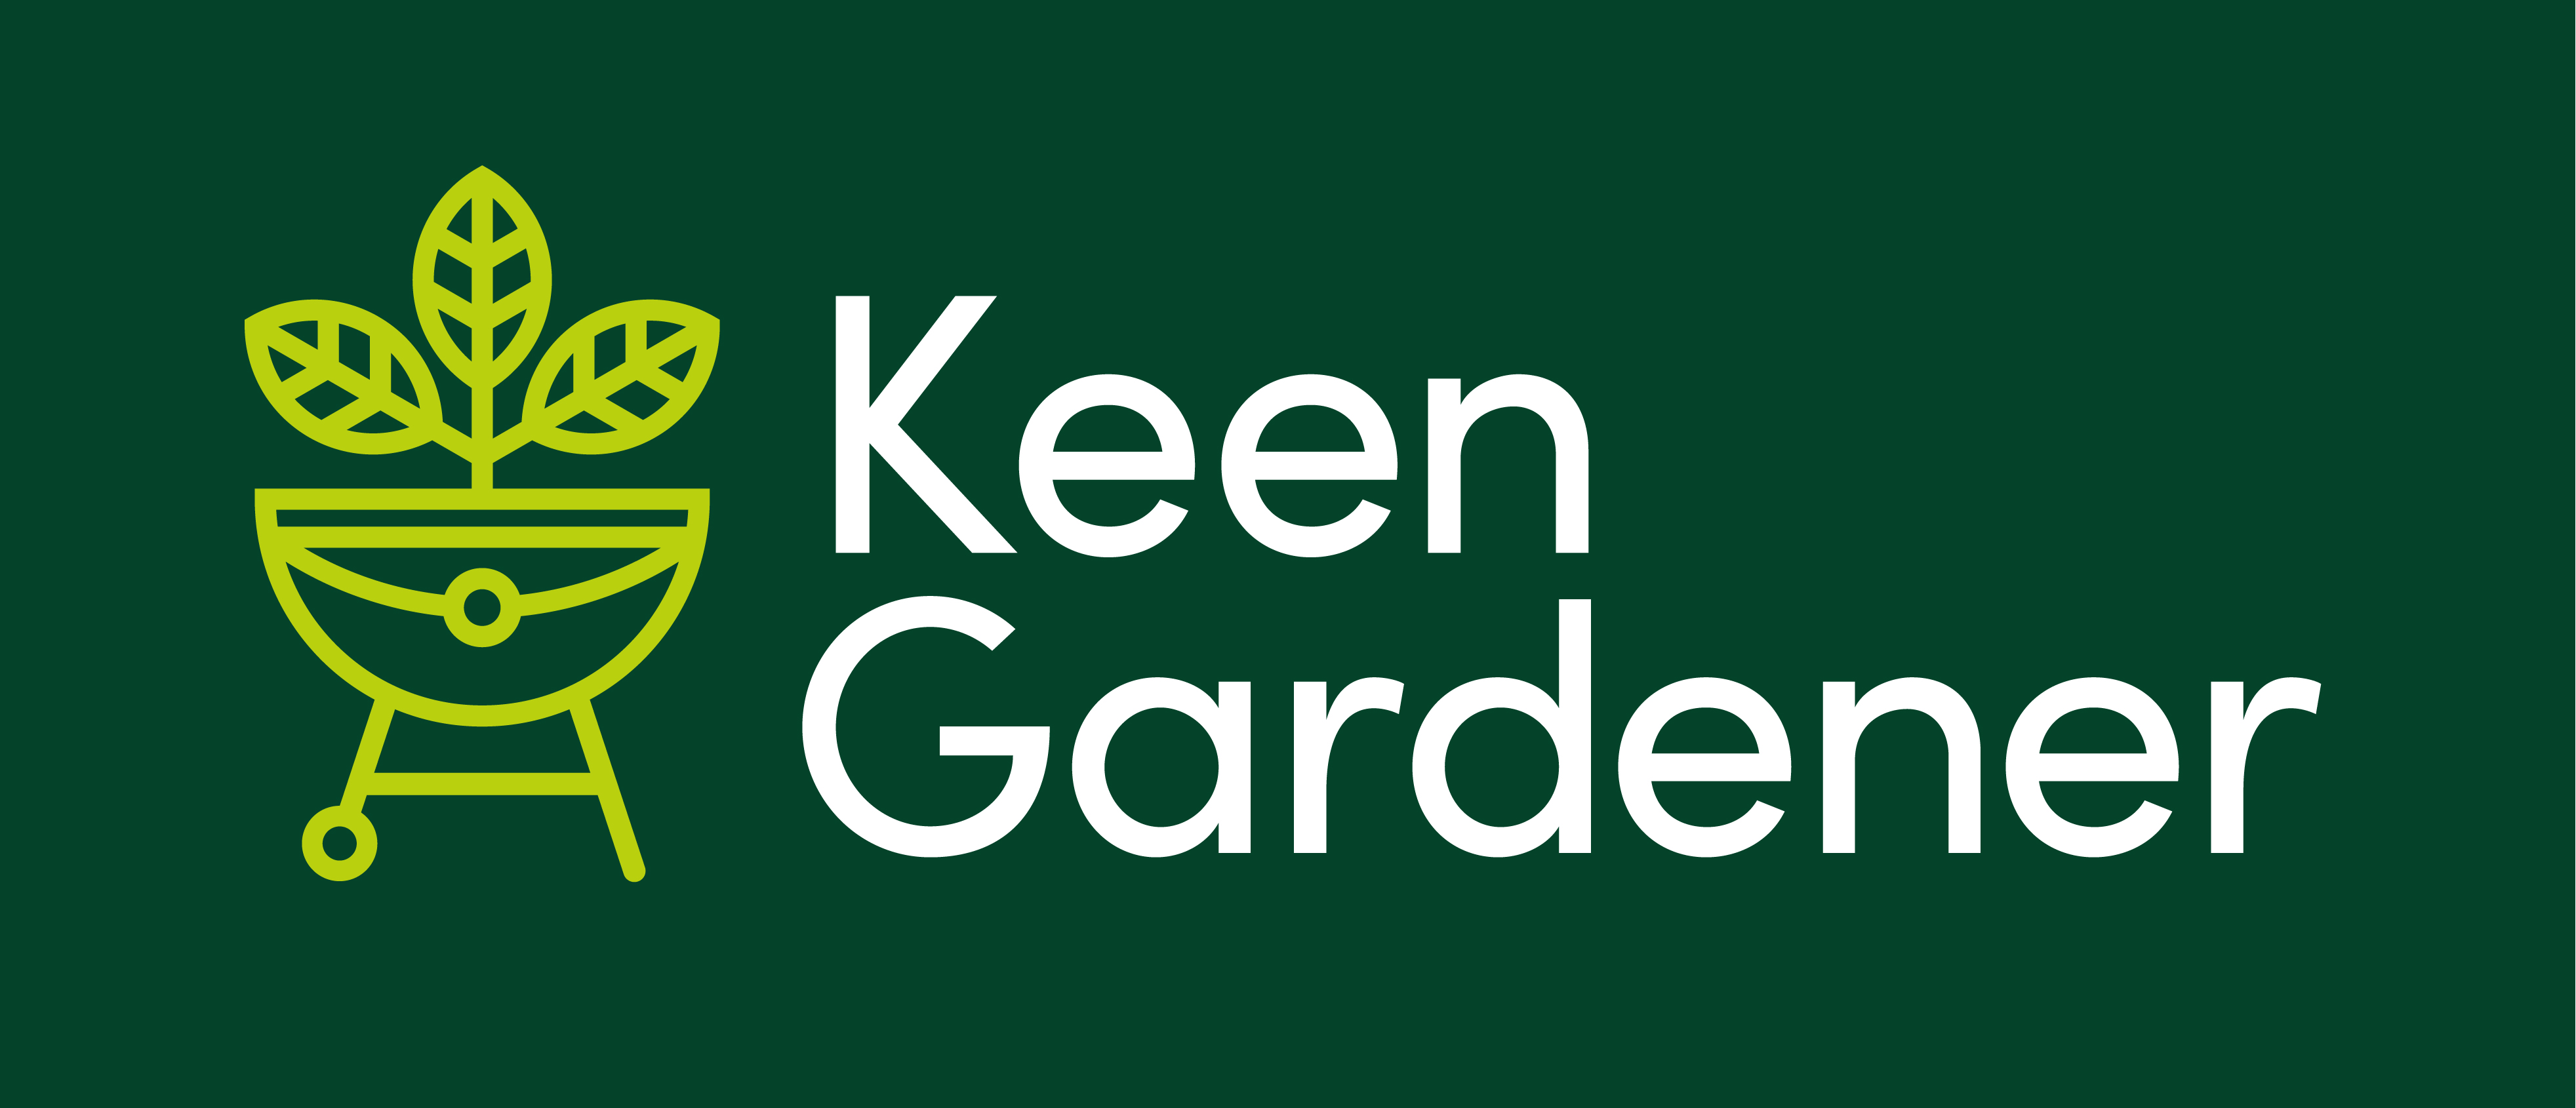 Finance Offered by Klarna - Keen Gardener Online Garden Retailer of Barbecues, Garden Furniture & Garden Equipment